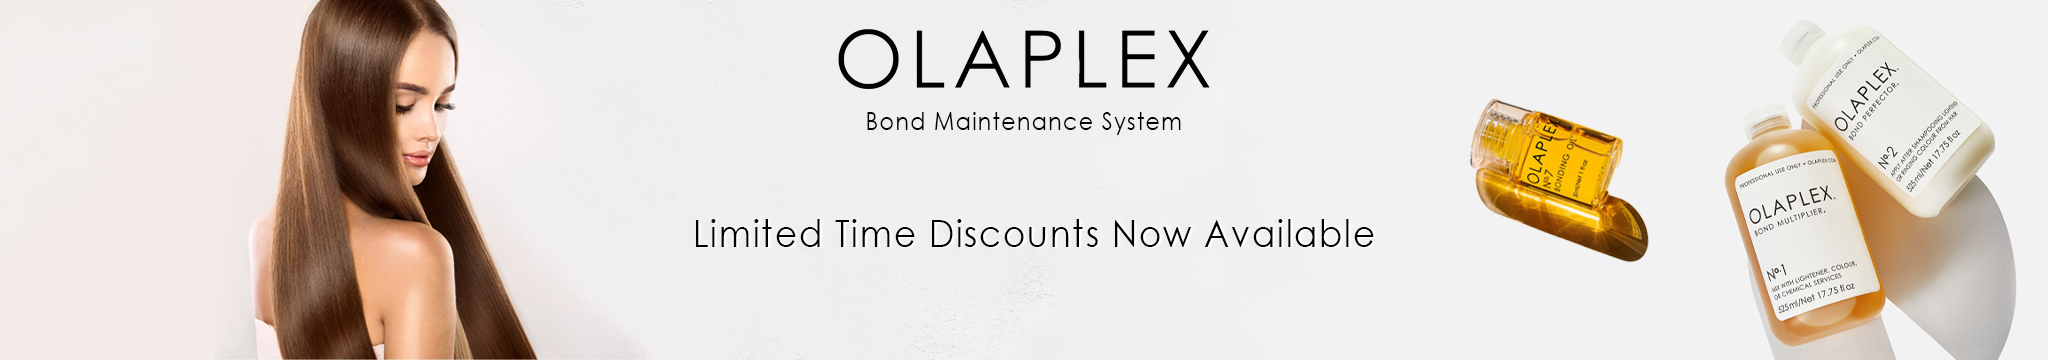 Olaplex 60%off sale